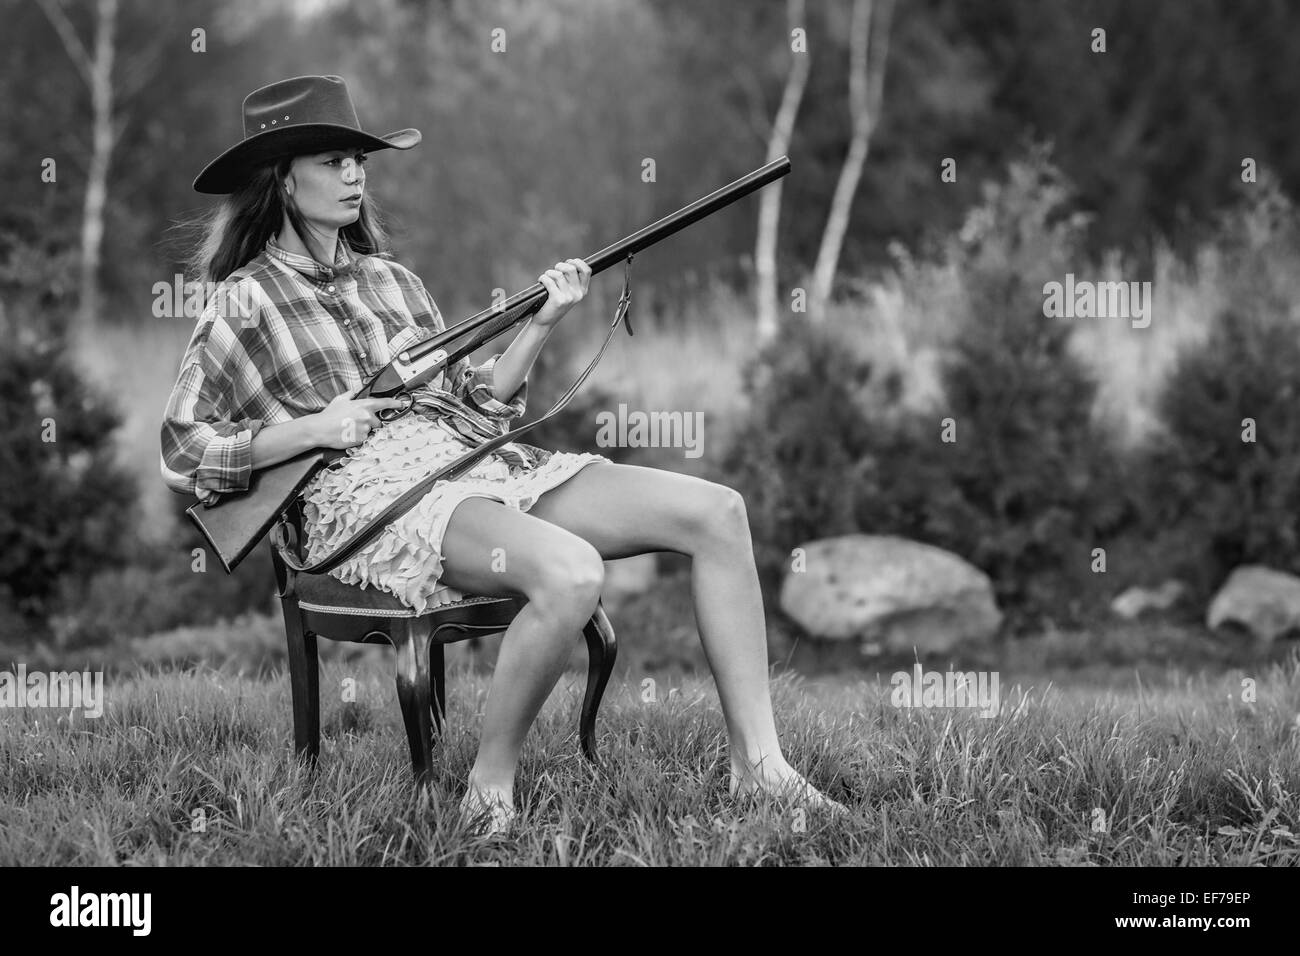 La photographie noir et blanc d'une jeune fille en chapeau de cowboy assis dans une chaise fantaisie avec un fusil dans une arrière-cour. Banque D'Images